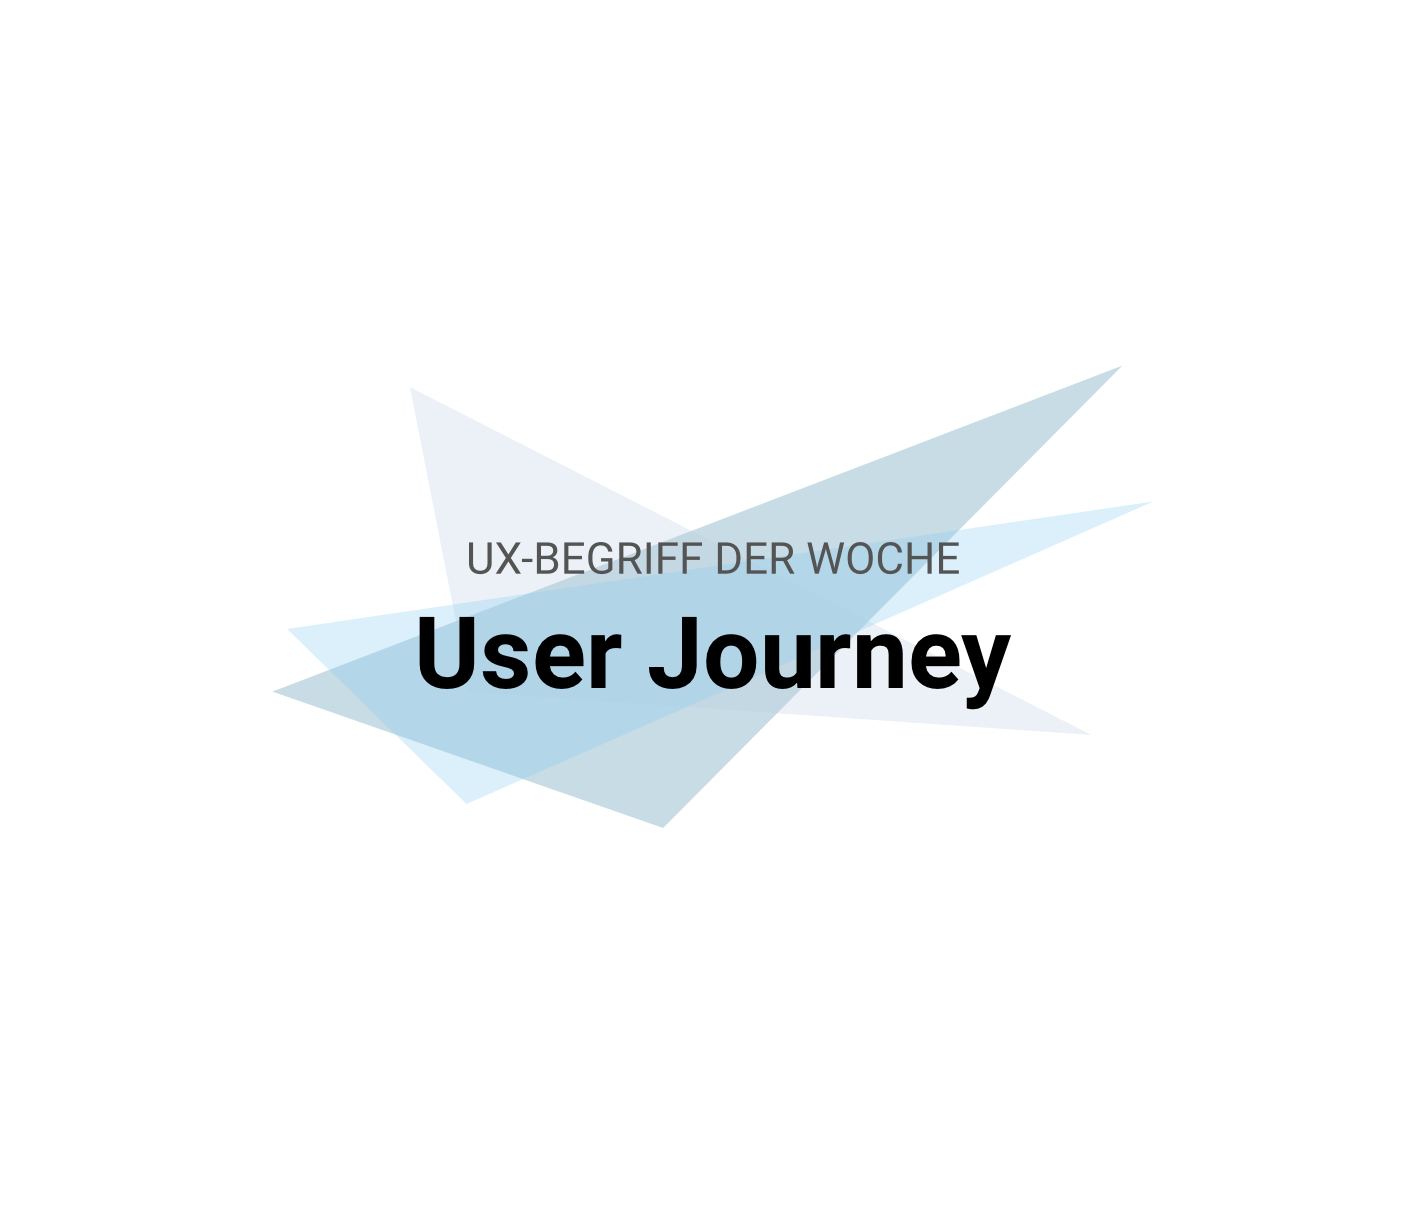 UX-Begriffe kurz erklärt: "User Journey"